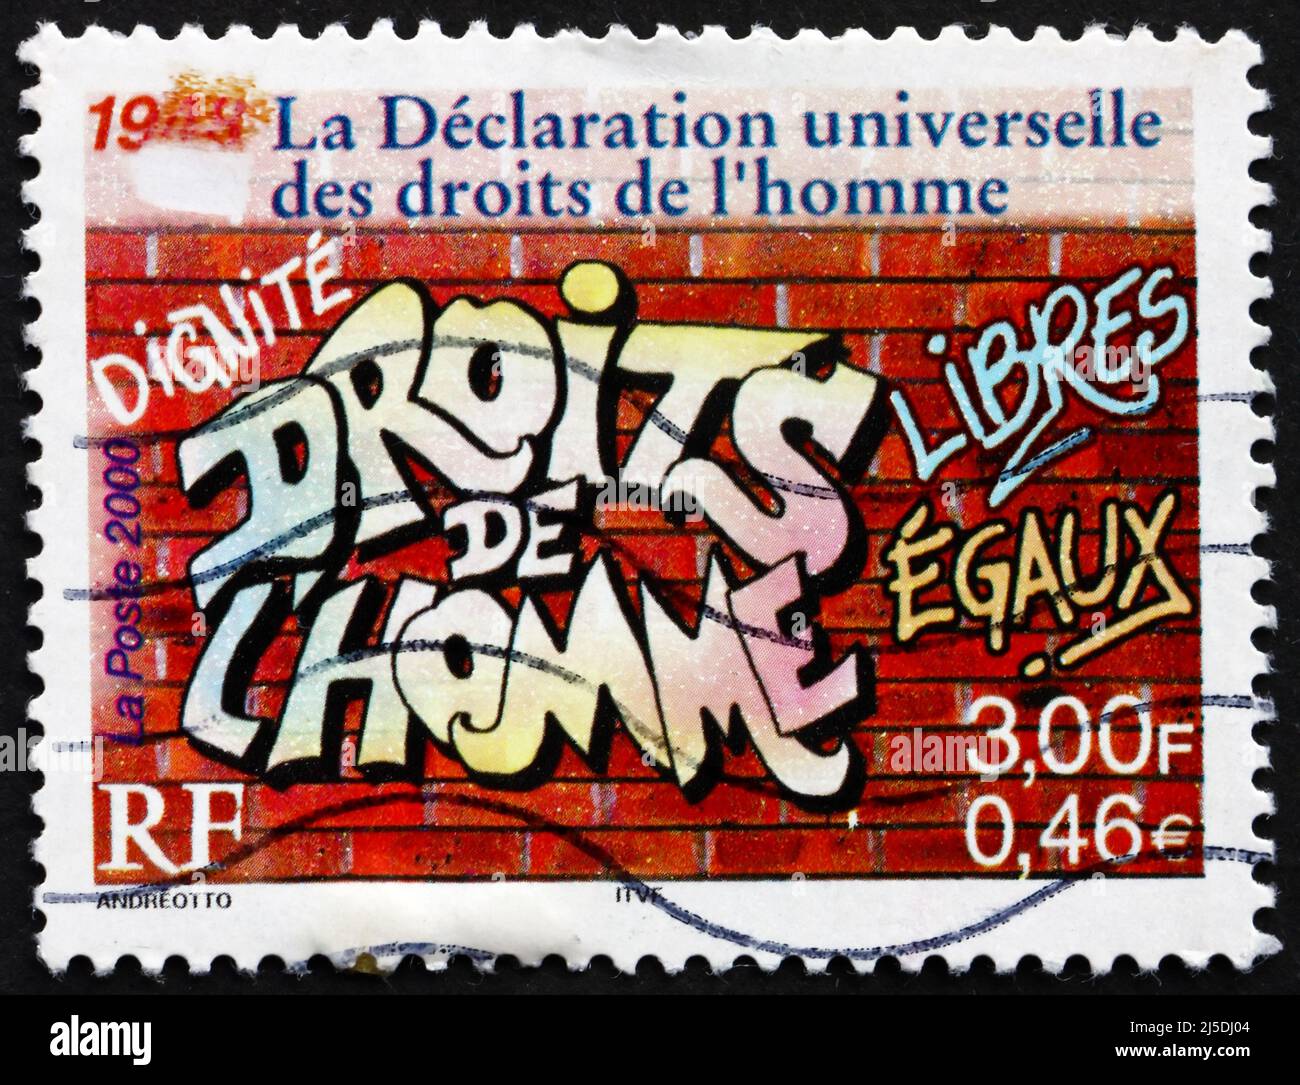 FRANKREICH - UM 2000: Eine in Frankreich gedruckte Marke zeigt die Allgemeine Erklärung der Menschenrechte, 1948, Graffiti on the Wall, um 2000 Stockfoto